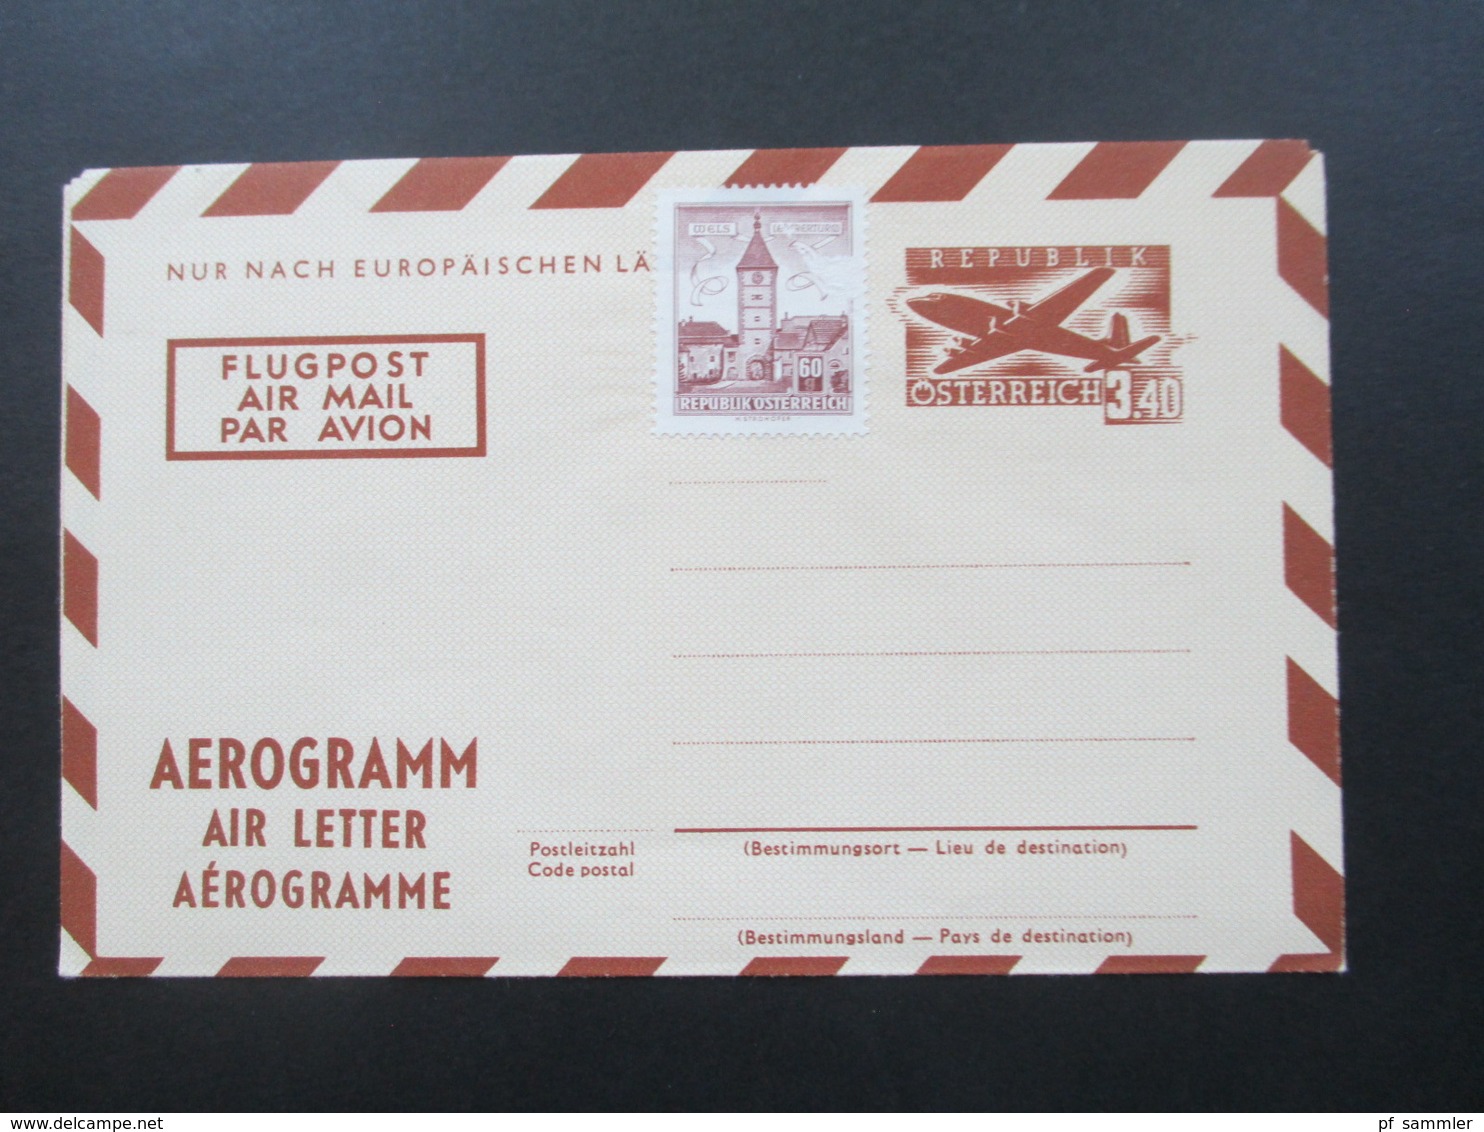 Österreich 1950 / 60er Jahre Aerogramm 7 Stück teilweise IFA und WIPA Zudrucke! 6x ungebraucht und 1x FDC Einschreiben